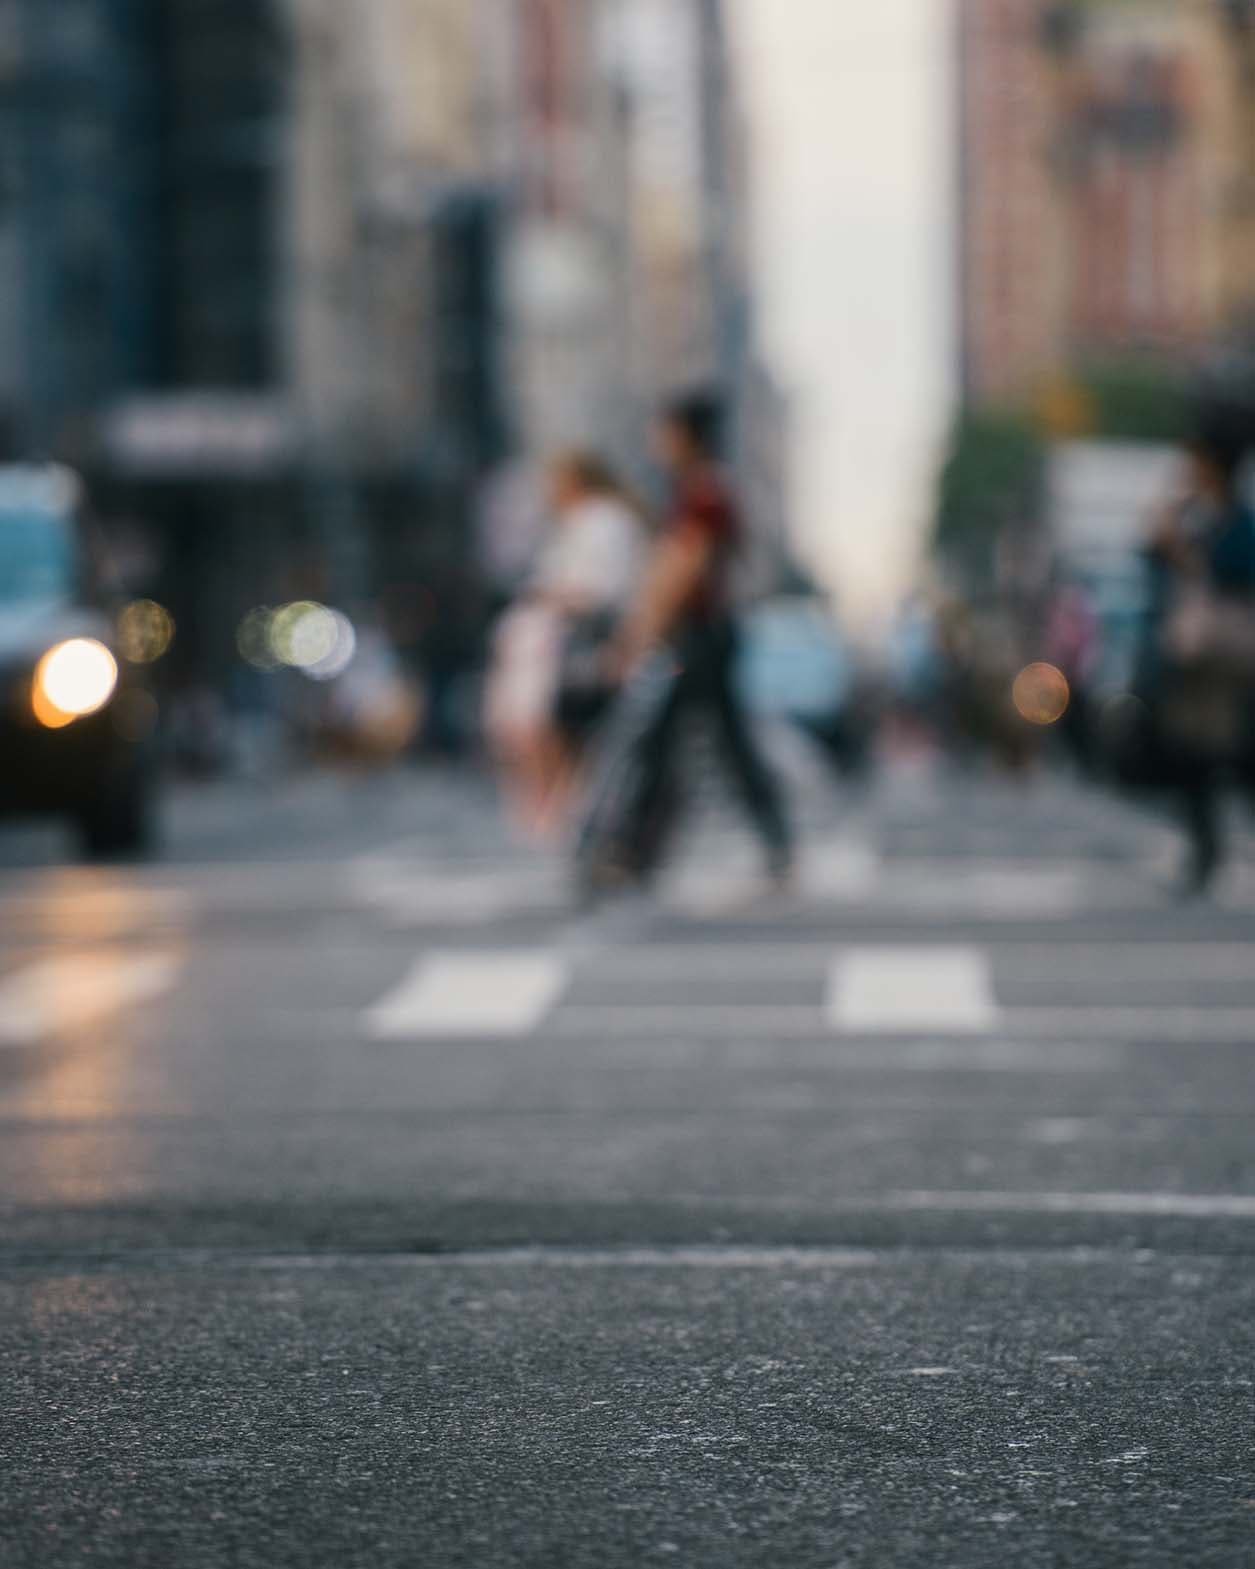 People walking across a crosswalk